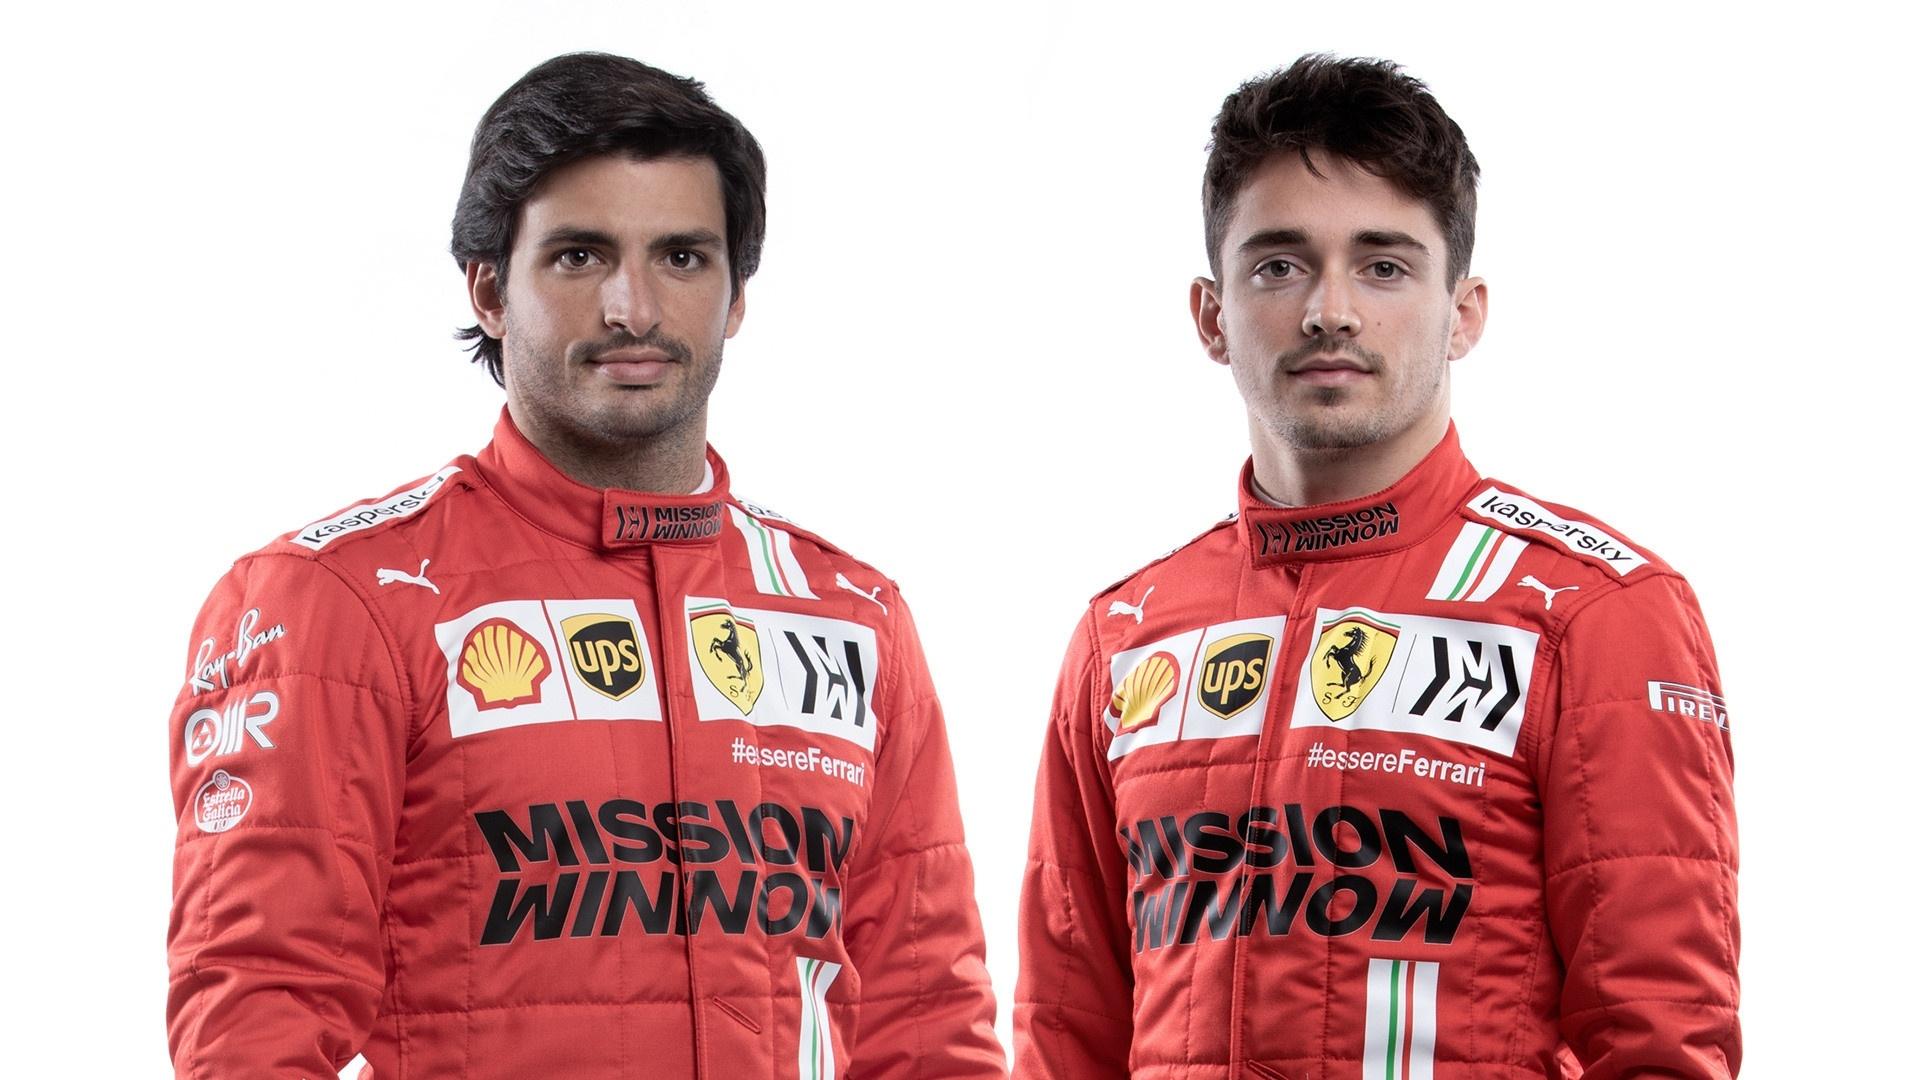 Ferrari aposta em harmonia de nova dupla de pilotos para se recuperar na F1  - 26/02/2021 - UOL Esporte